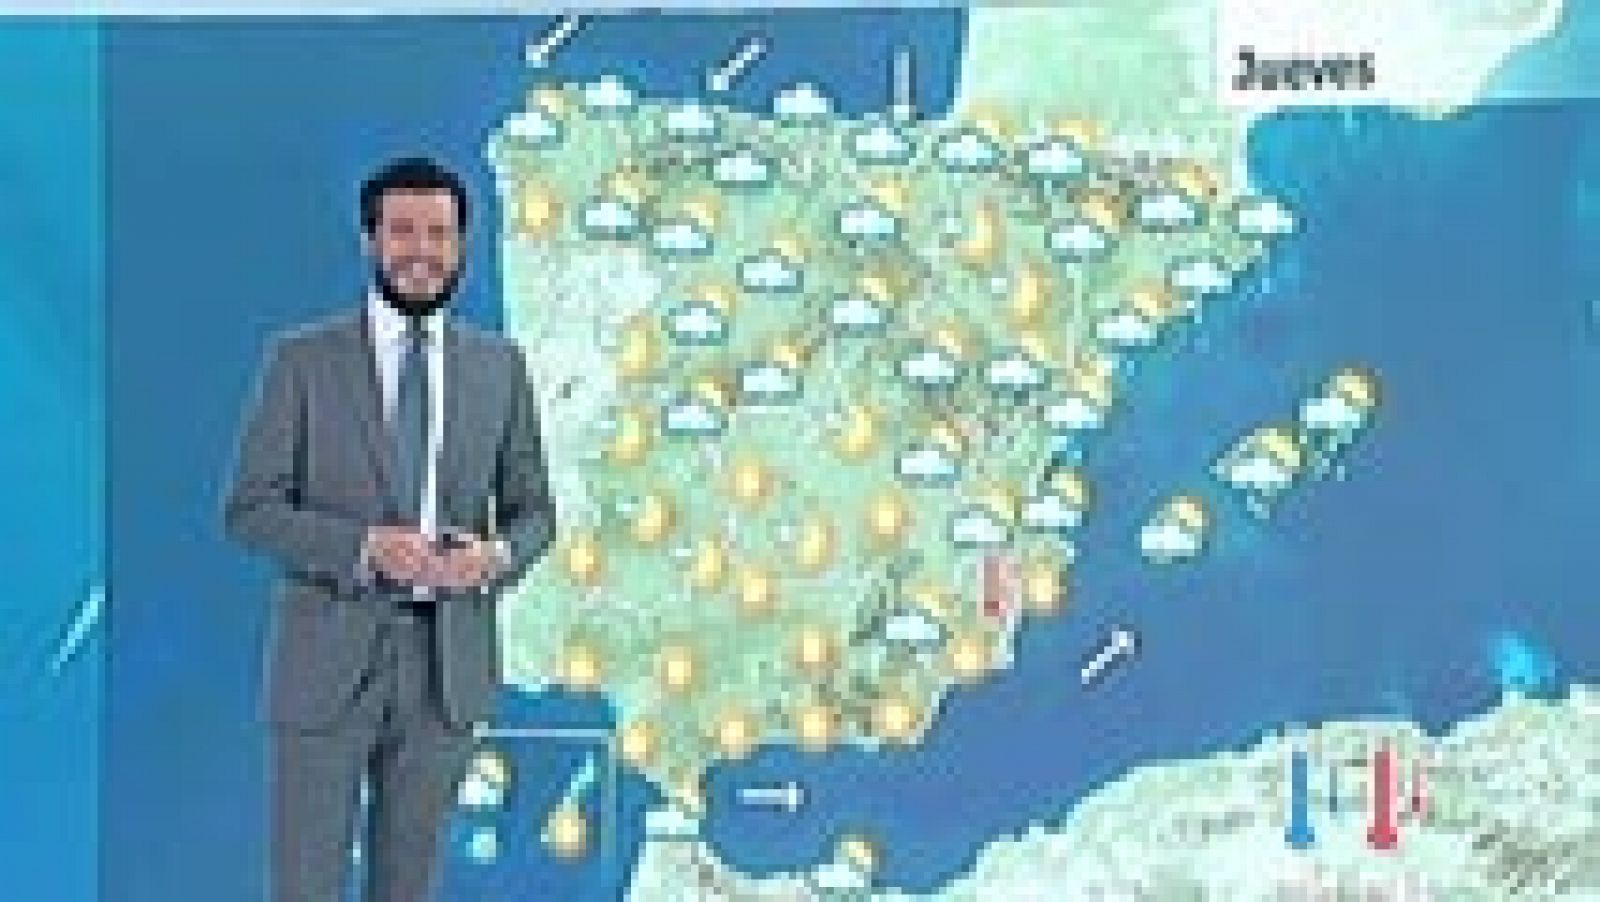 Aviso activado en la costa y el prelitoral catalán y en Baleares por chubascos tormentosos